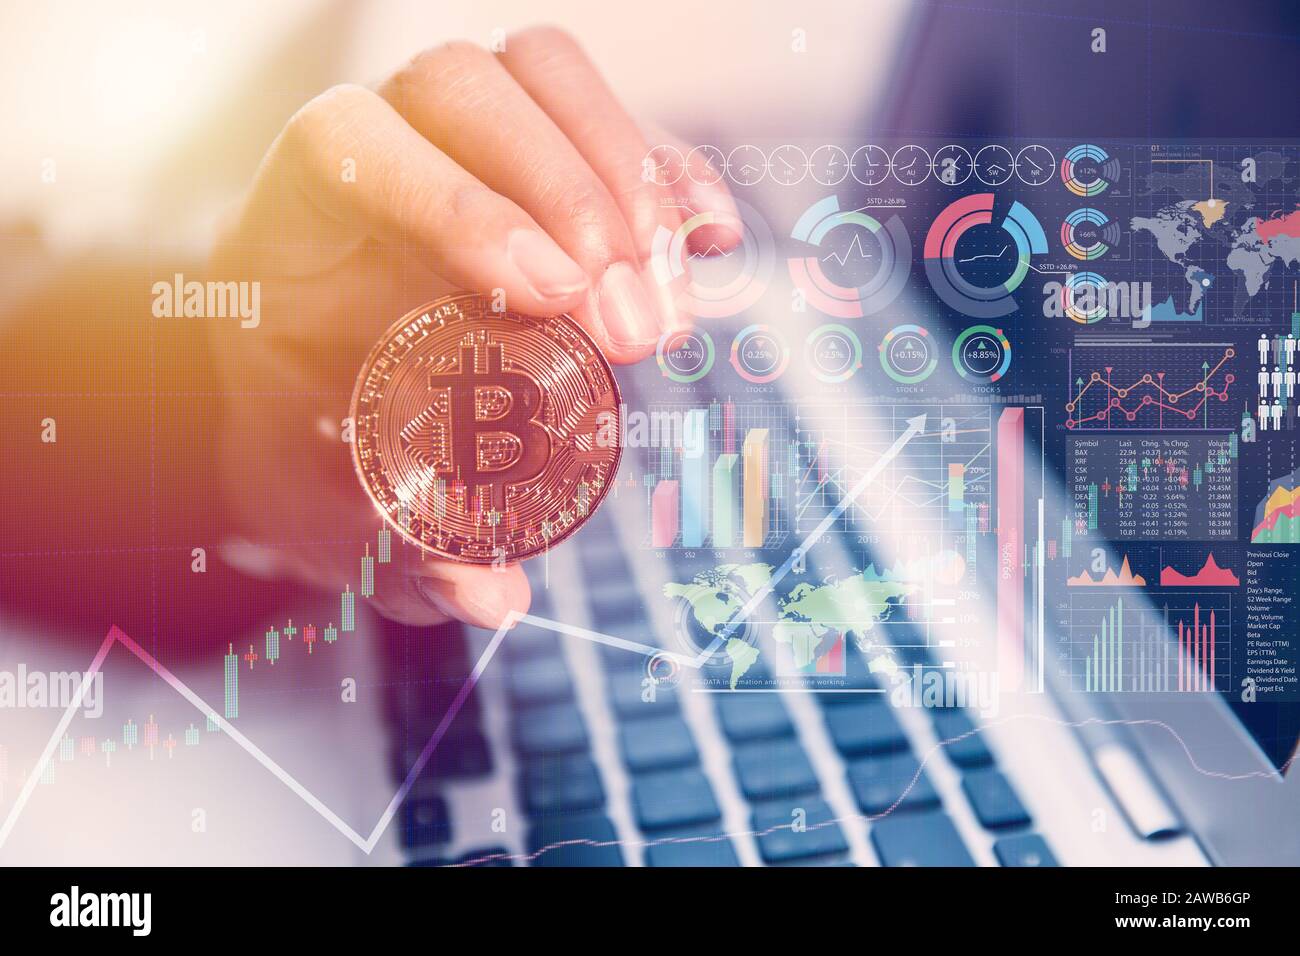 Bitcoin con computer portatile infografica per denaro digitale o criptovaluta nuovo concetto di tecnologia di pagamento in valuta virtuale Foto Stock